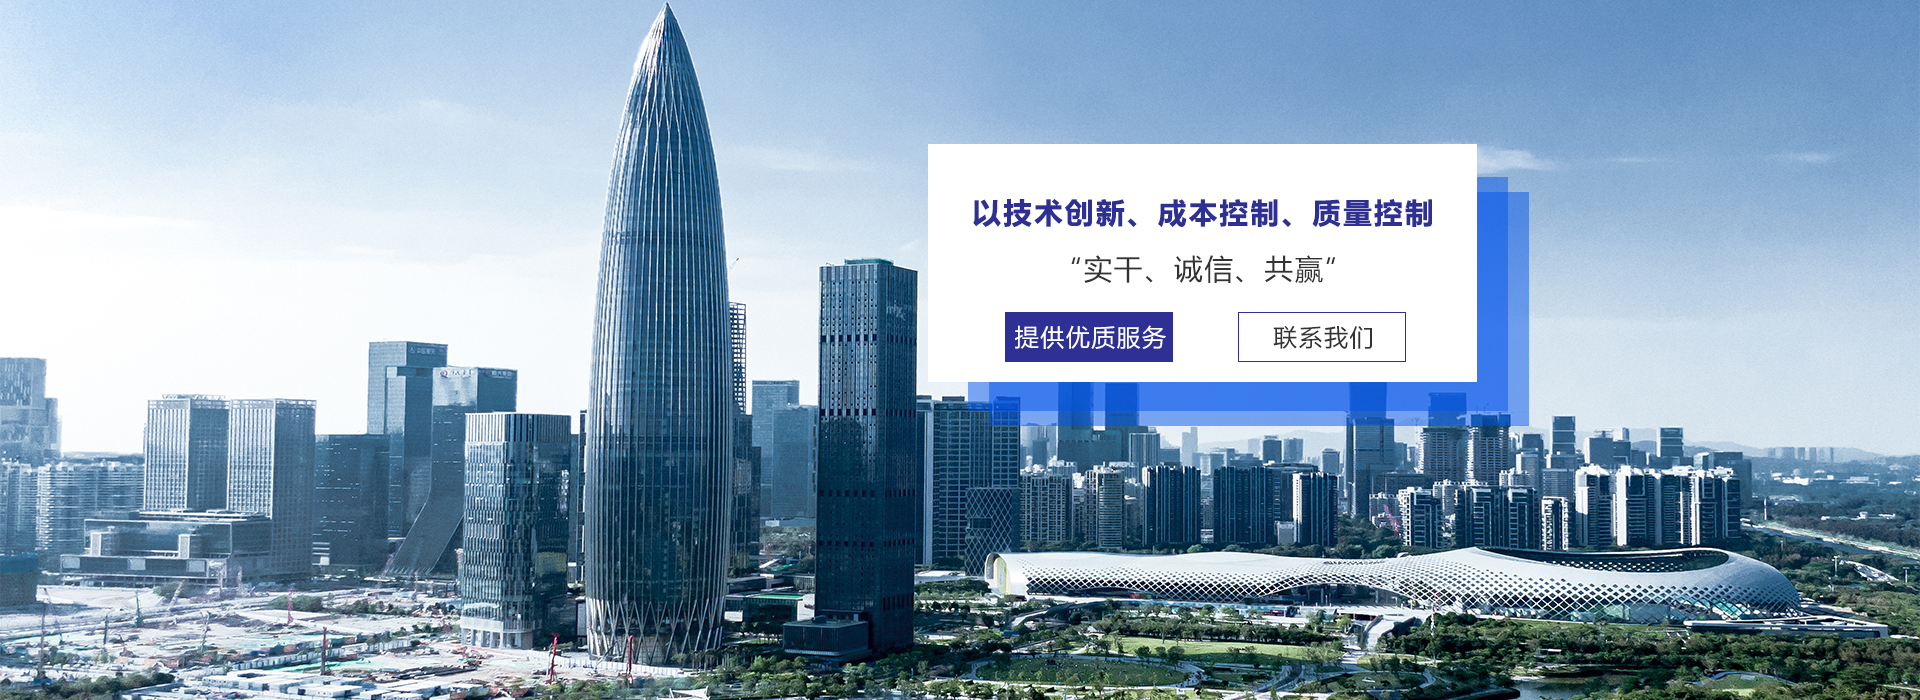 深圳市恒城建設有限公司與我司簽訂網站建設協議